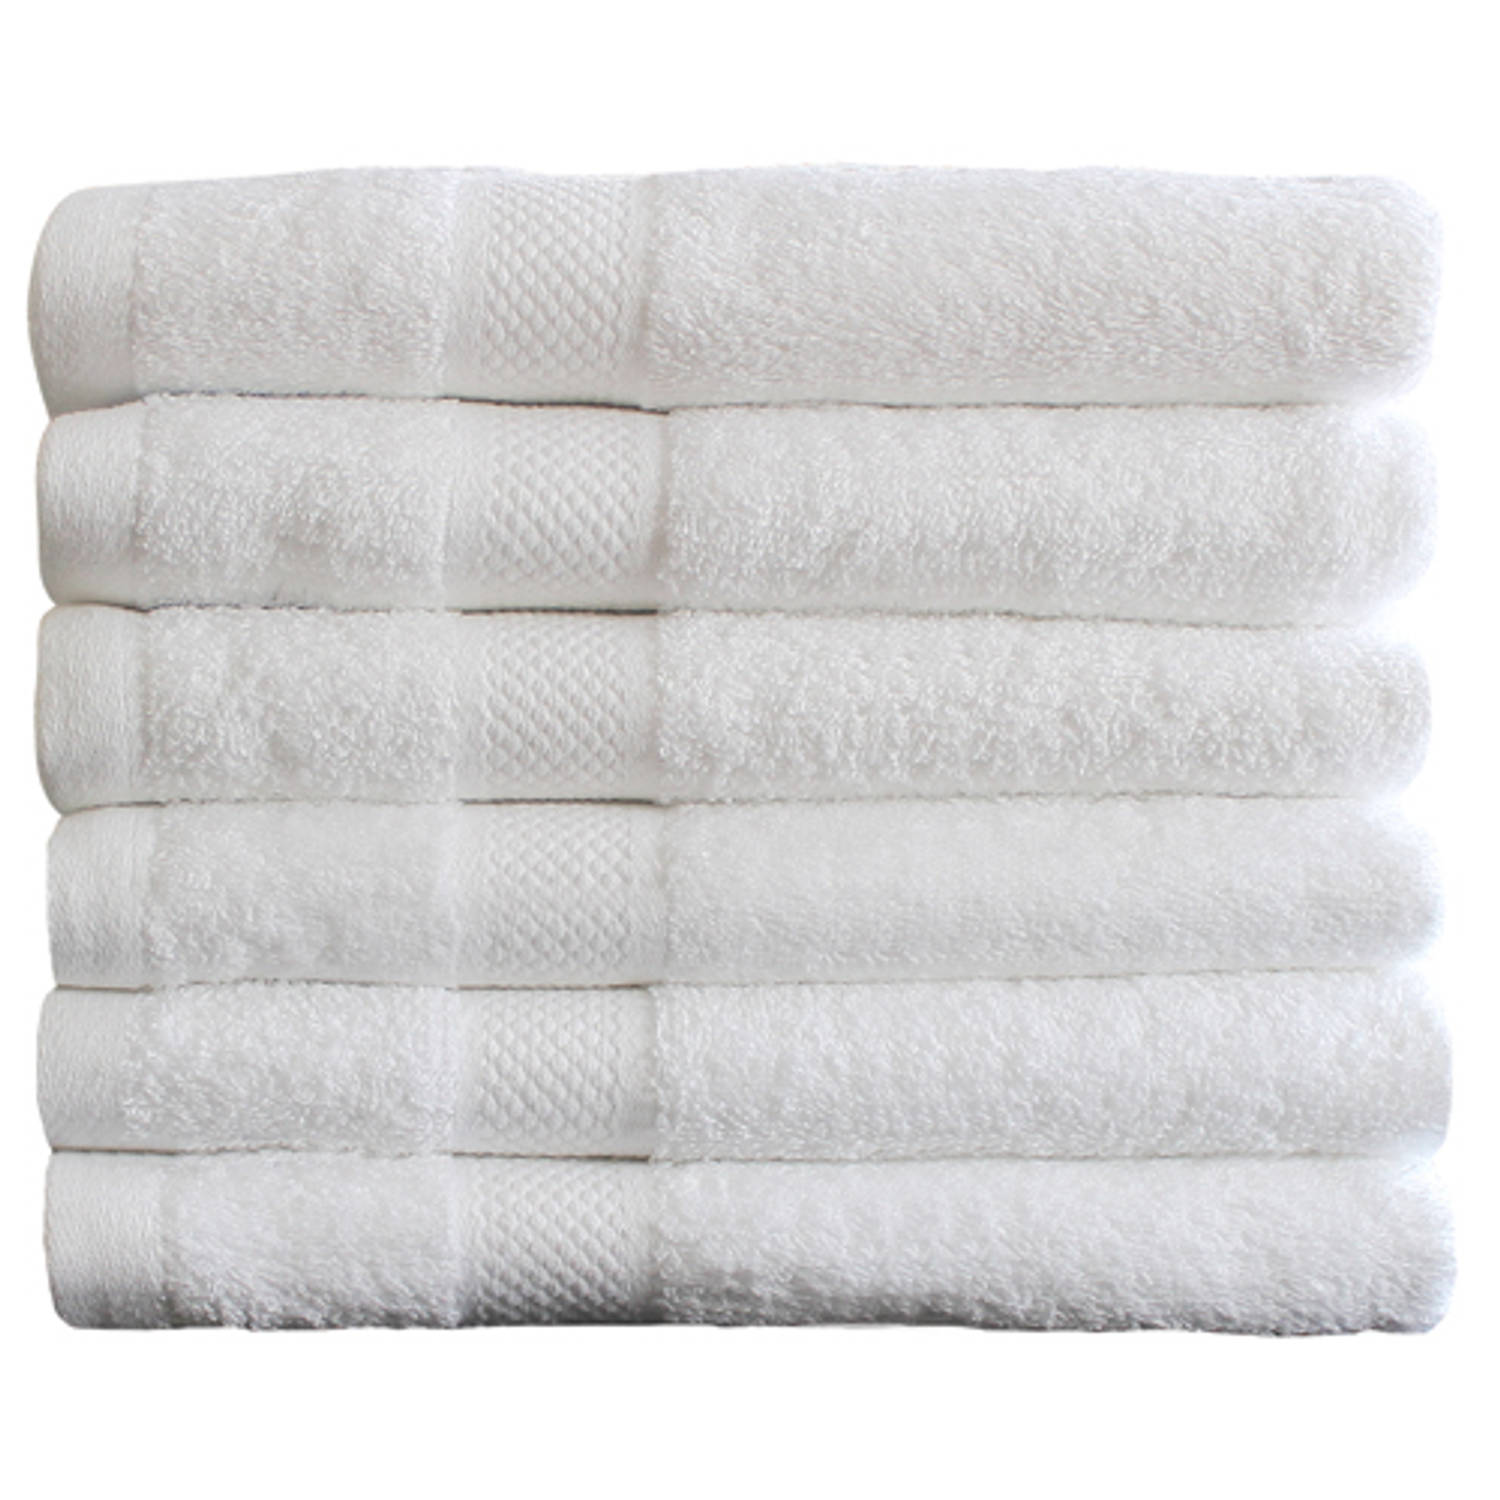 Auckland straal Ster Katoenen Handdoeken Hotelkwaliteit – 6 Pack – 70 x 140 cm – Wit | Blokker